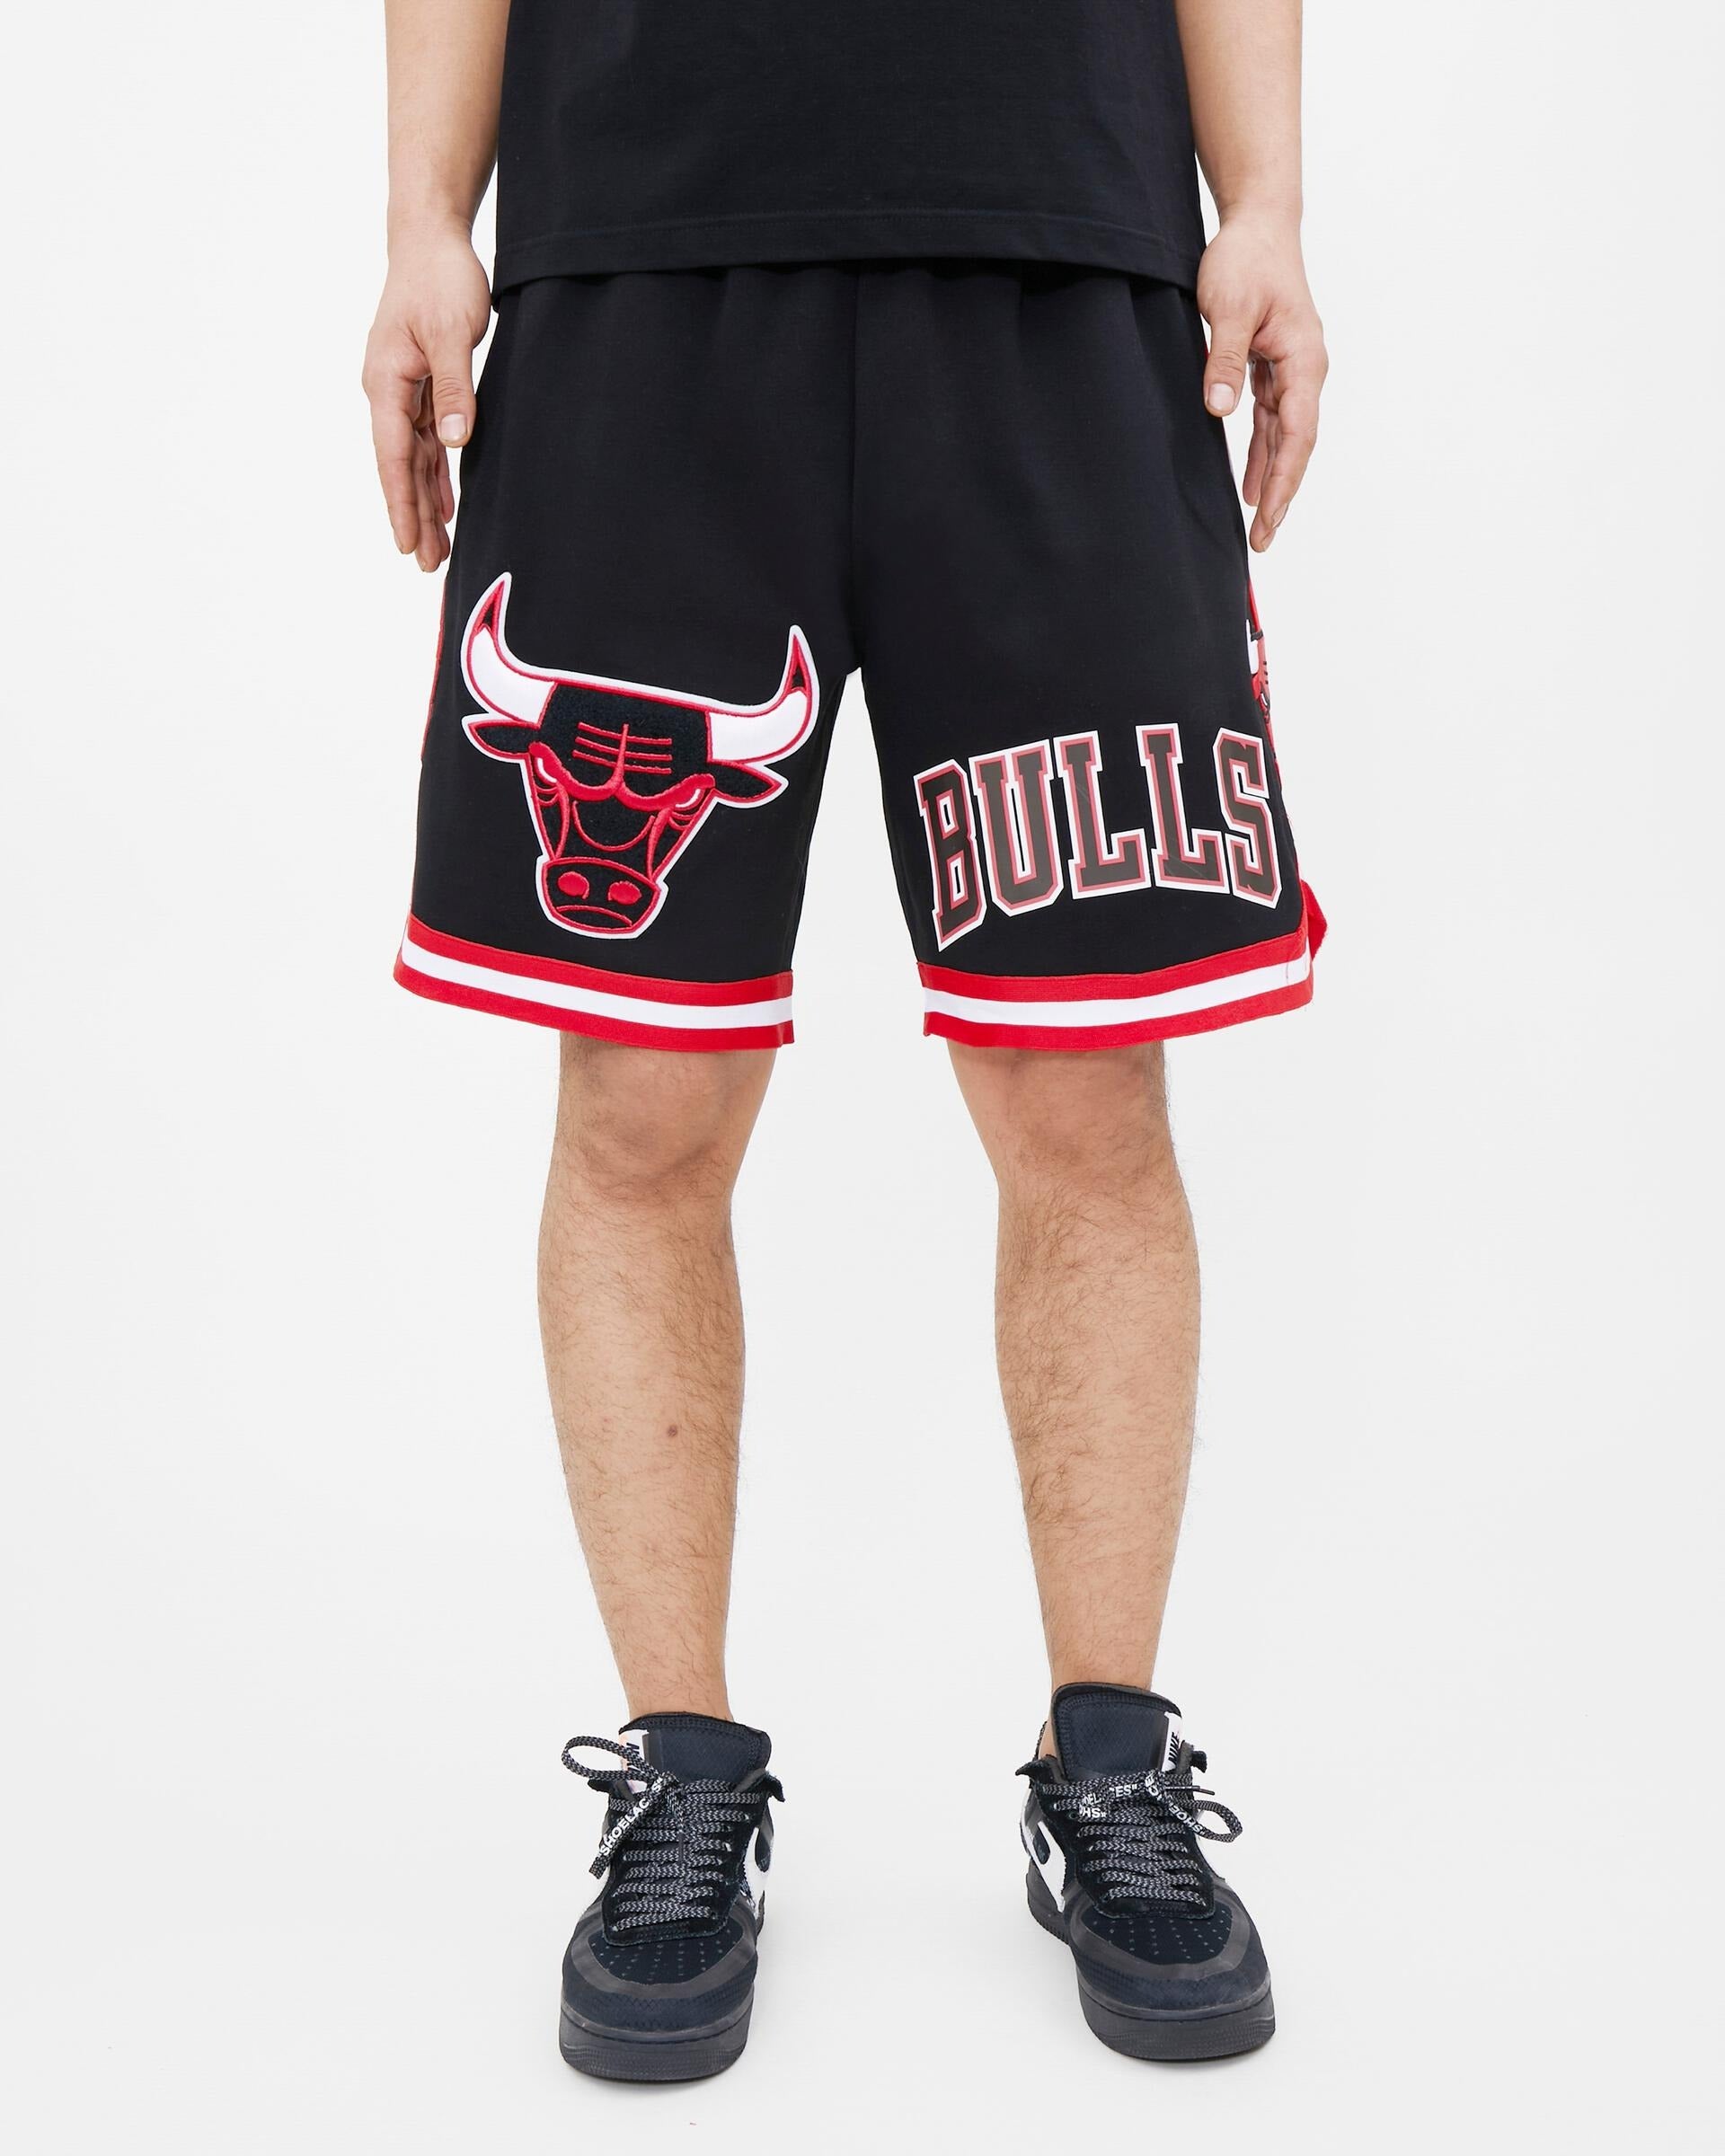 Chicago Bulls Shorts, Bulls Joggers, Sweatpants